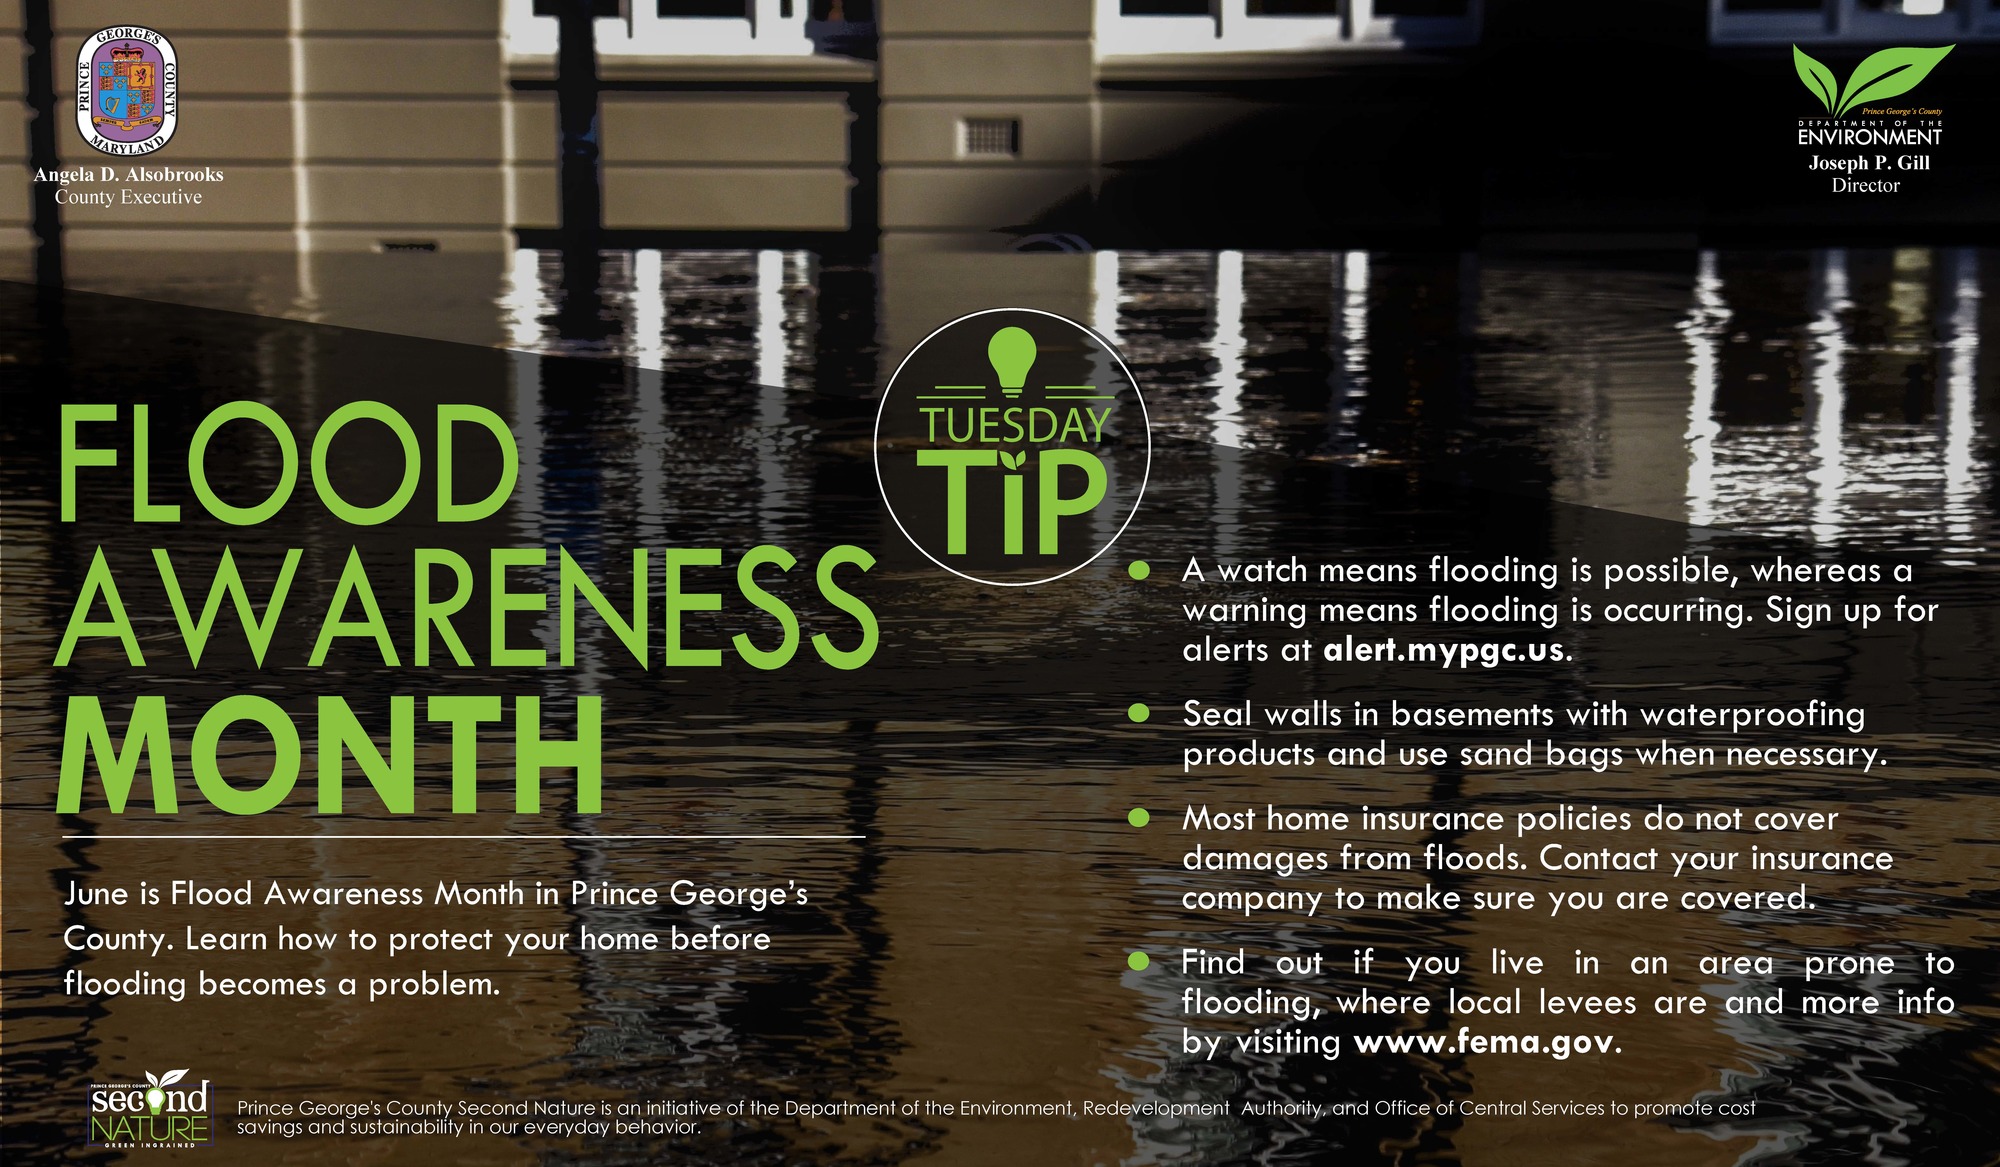 Tues Tip  6.4.19 flood awareness